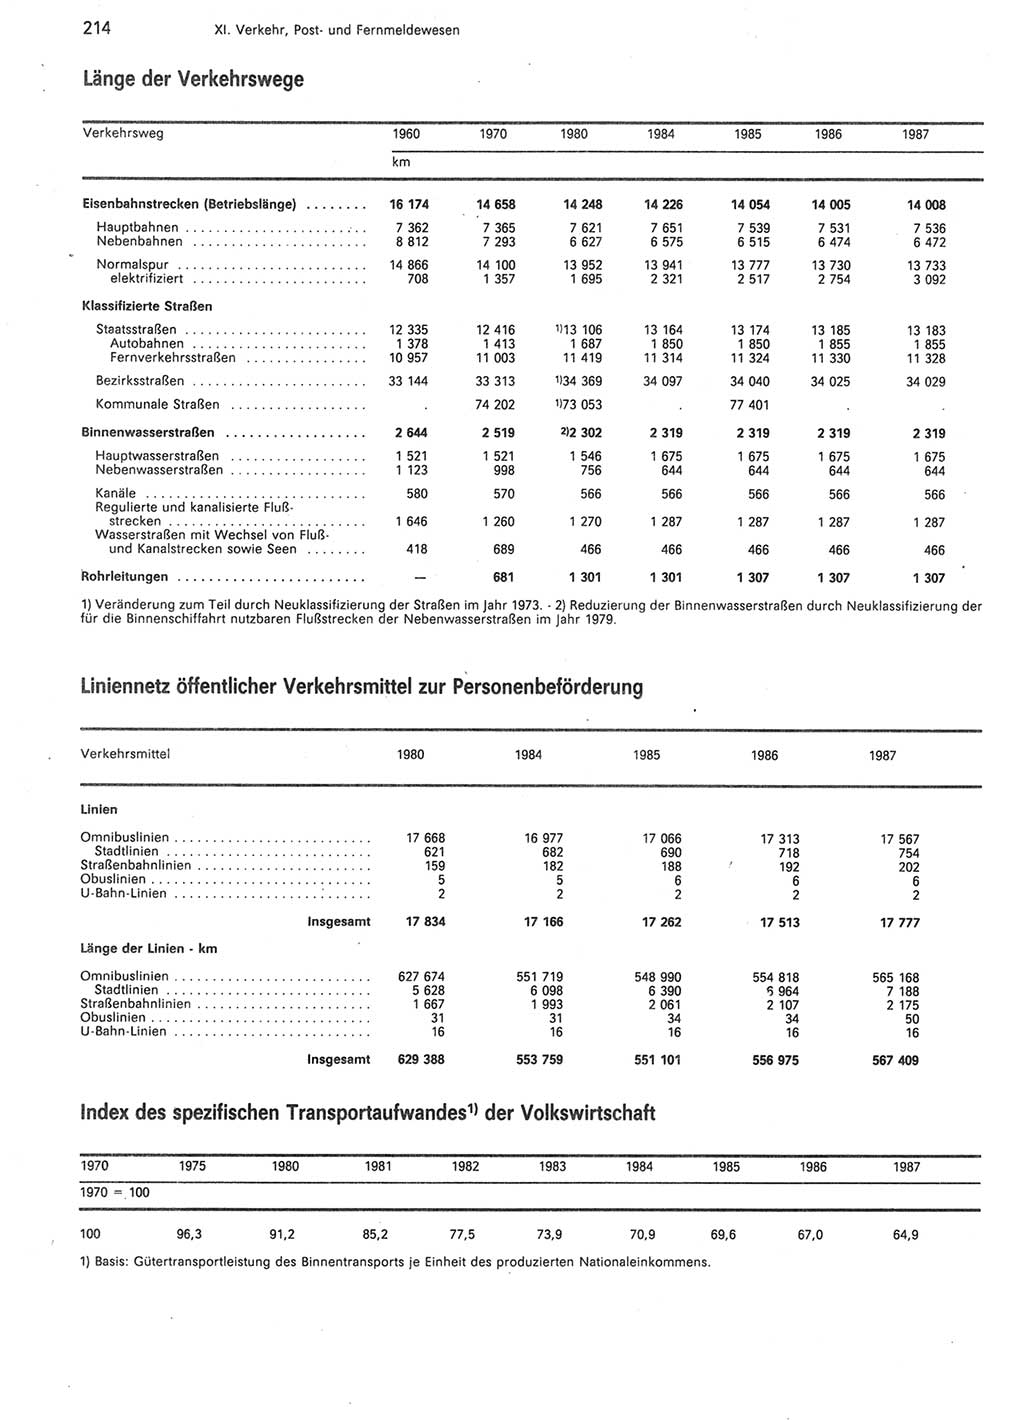 Statistisches Jahrbuch der Deutschen Demokratischen Republik (DDR) 1988, Seite 214 (Stat. Jb. DDR 1988, S. 214)